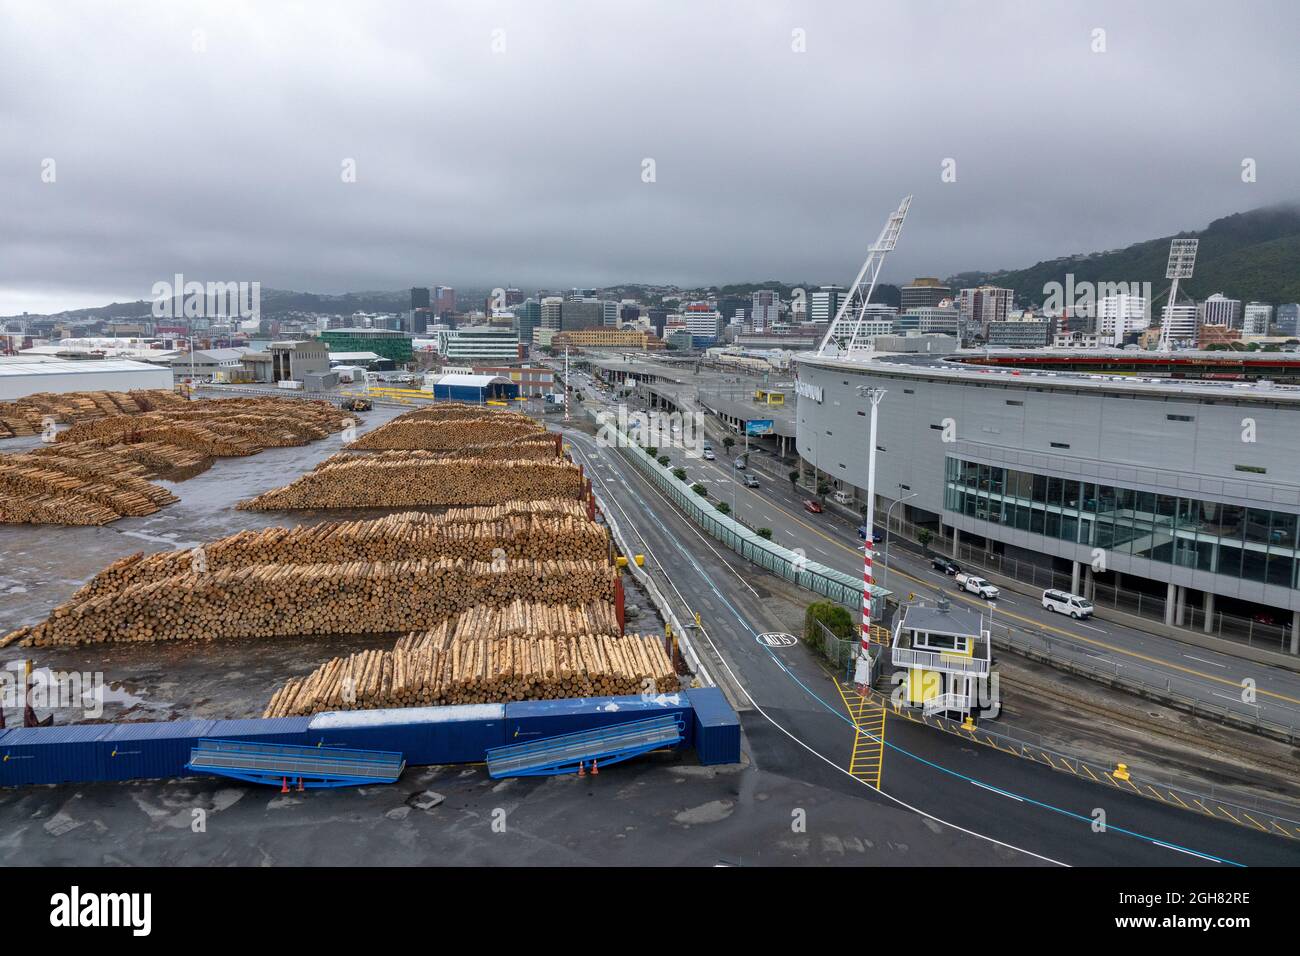 Bois de bois dans le port de Wellington Nouvelle-Zélande exportations de bois Stade régional de Wellington, Westpac maintenant connu sous le nom de Sky Stadium Banque D'Images